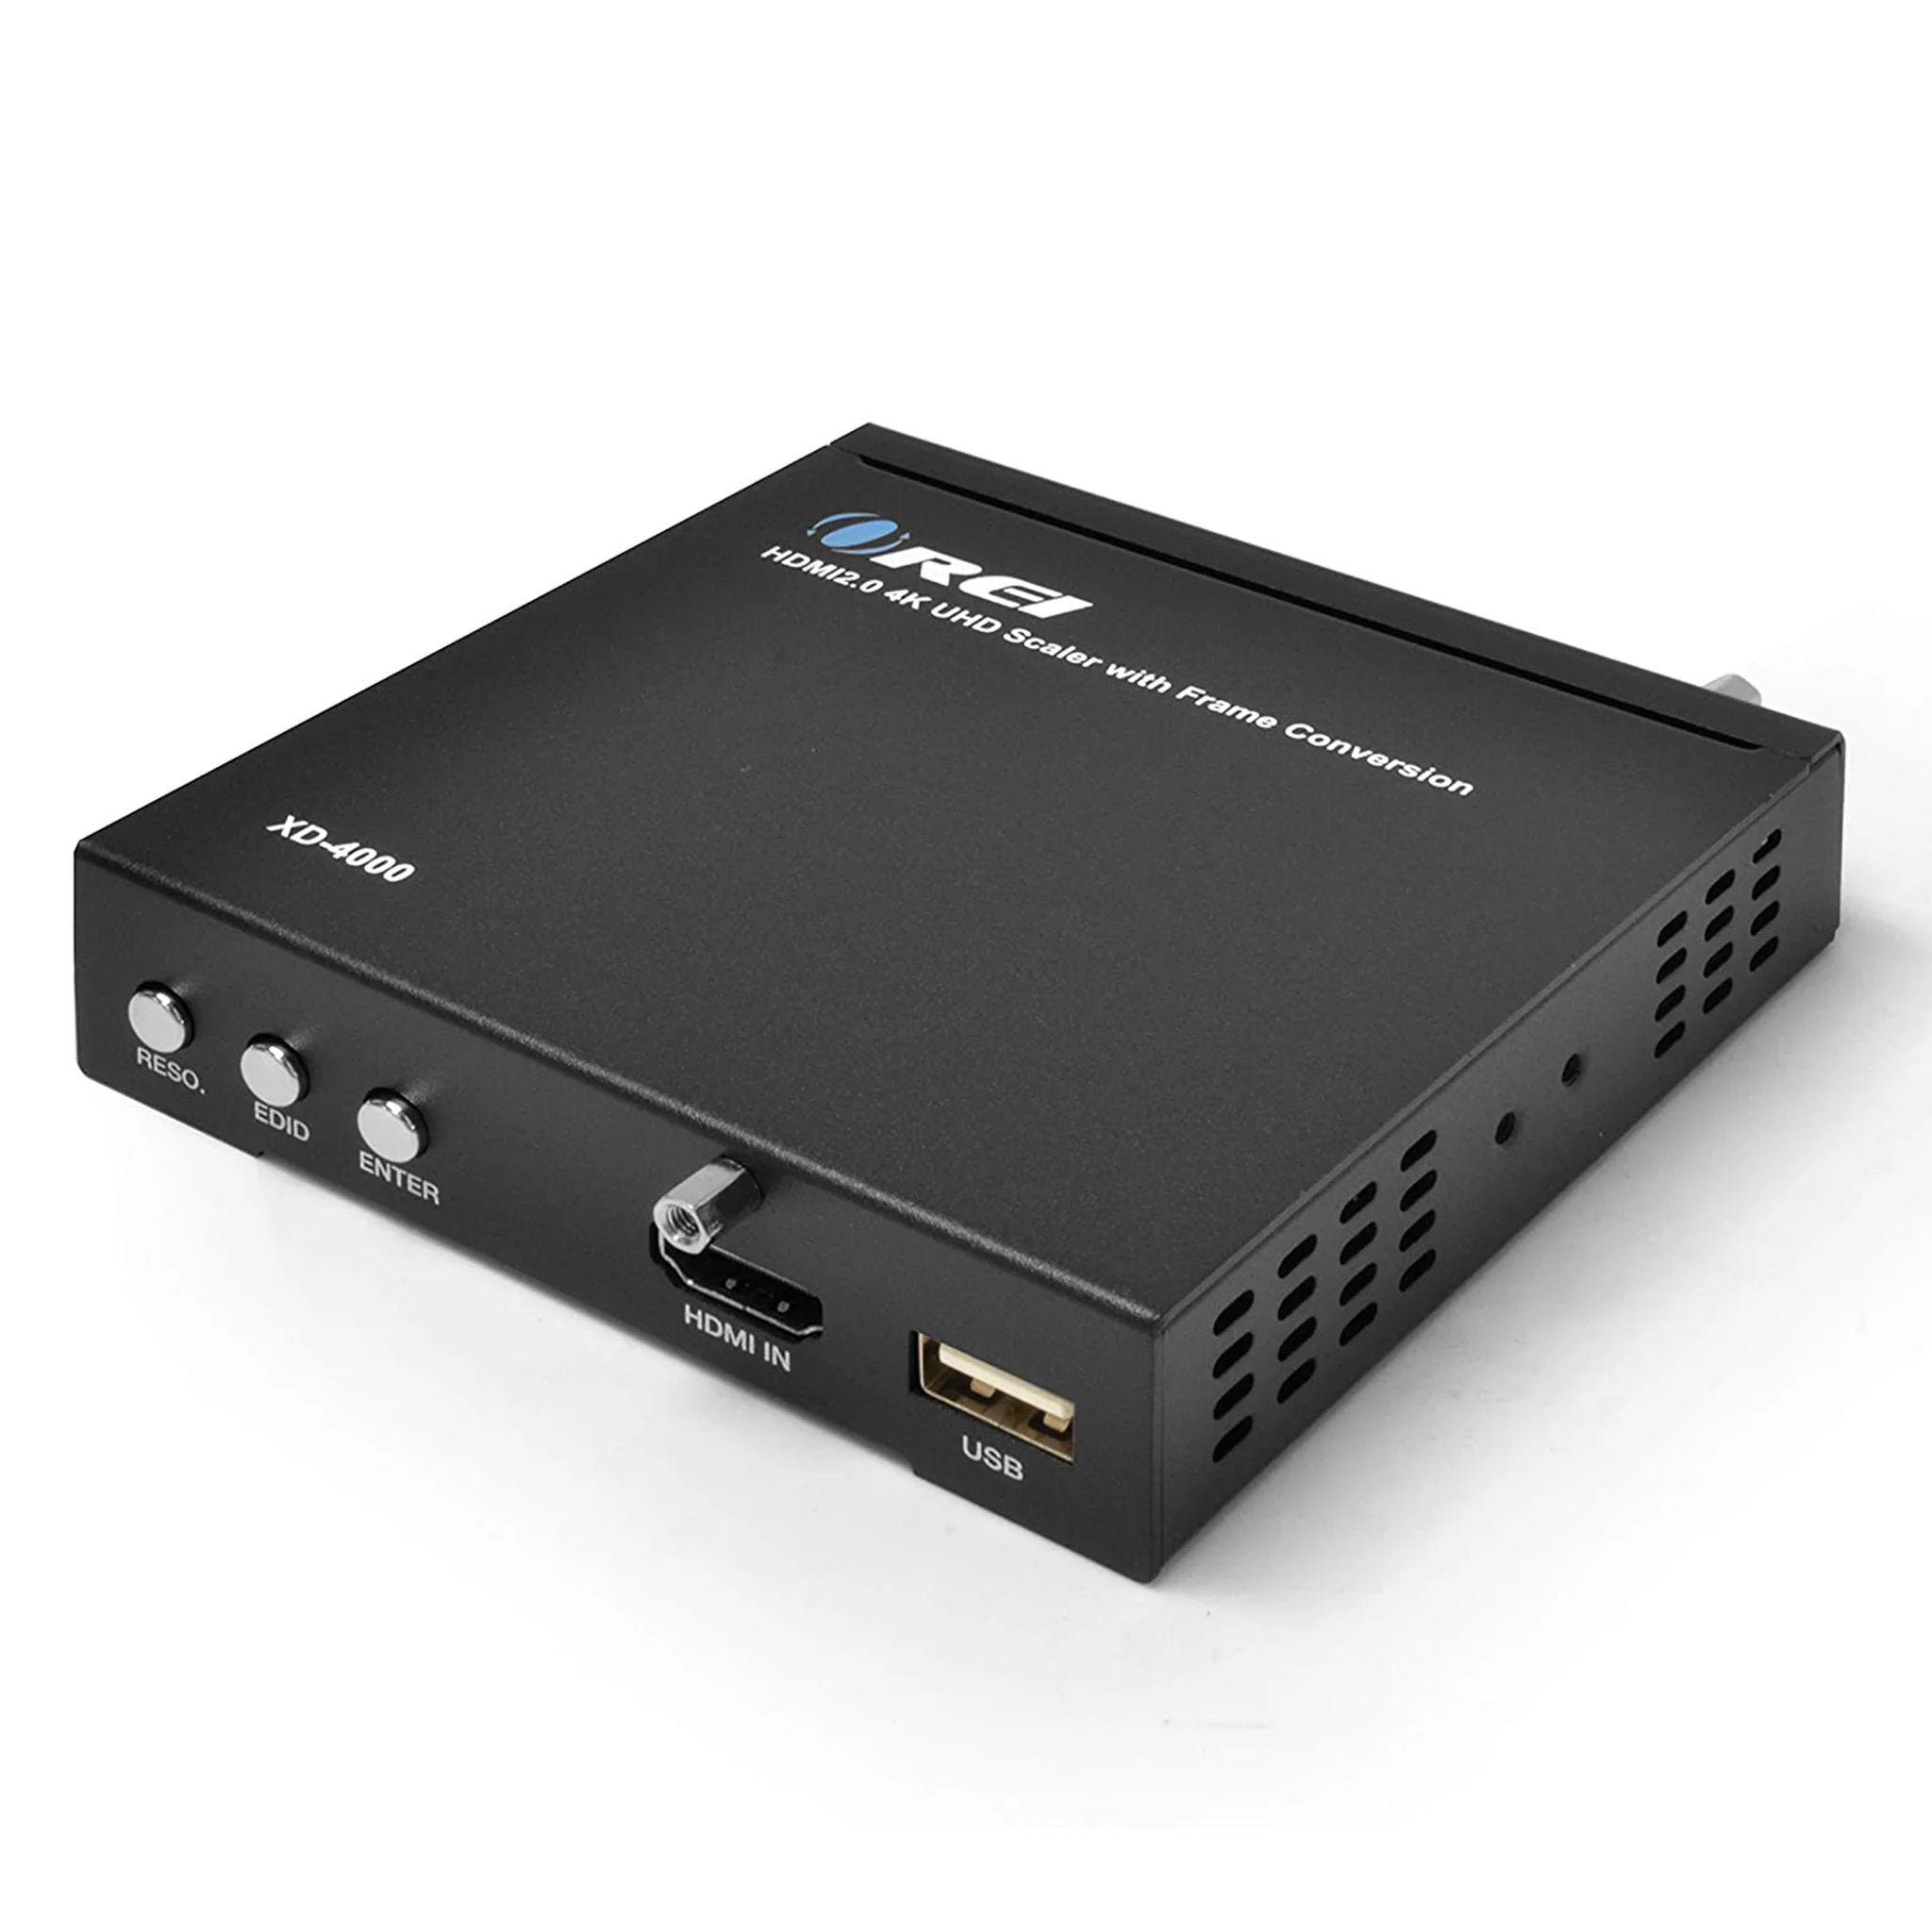 Orei - XD-4000 HDMI PAL to NTSC Video Converter